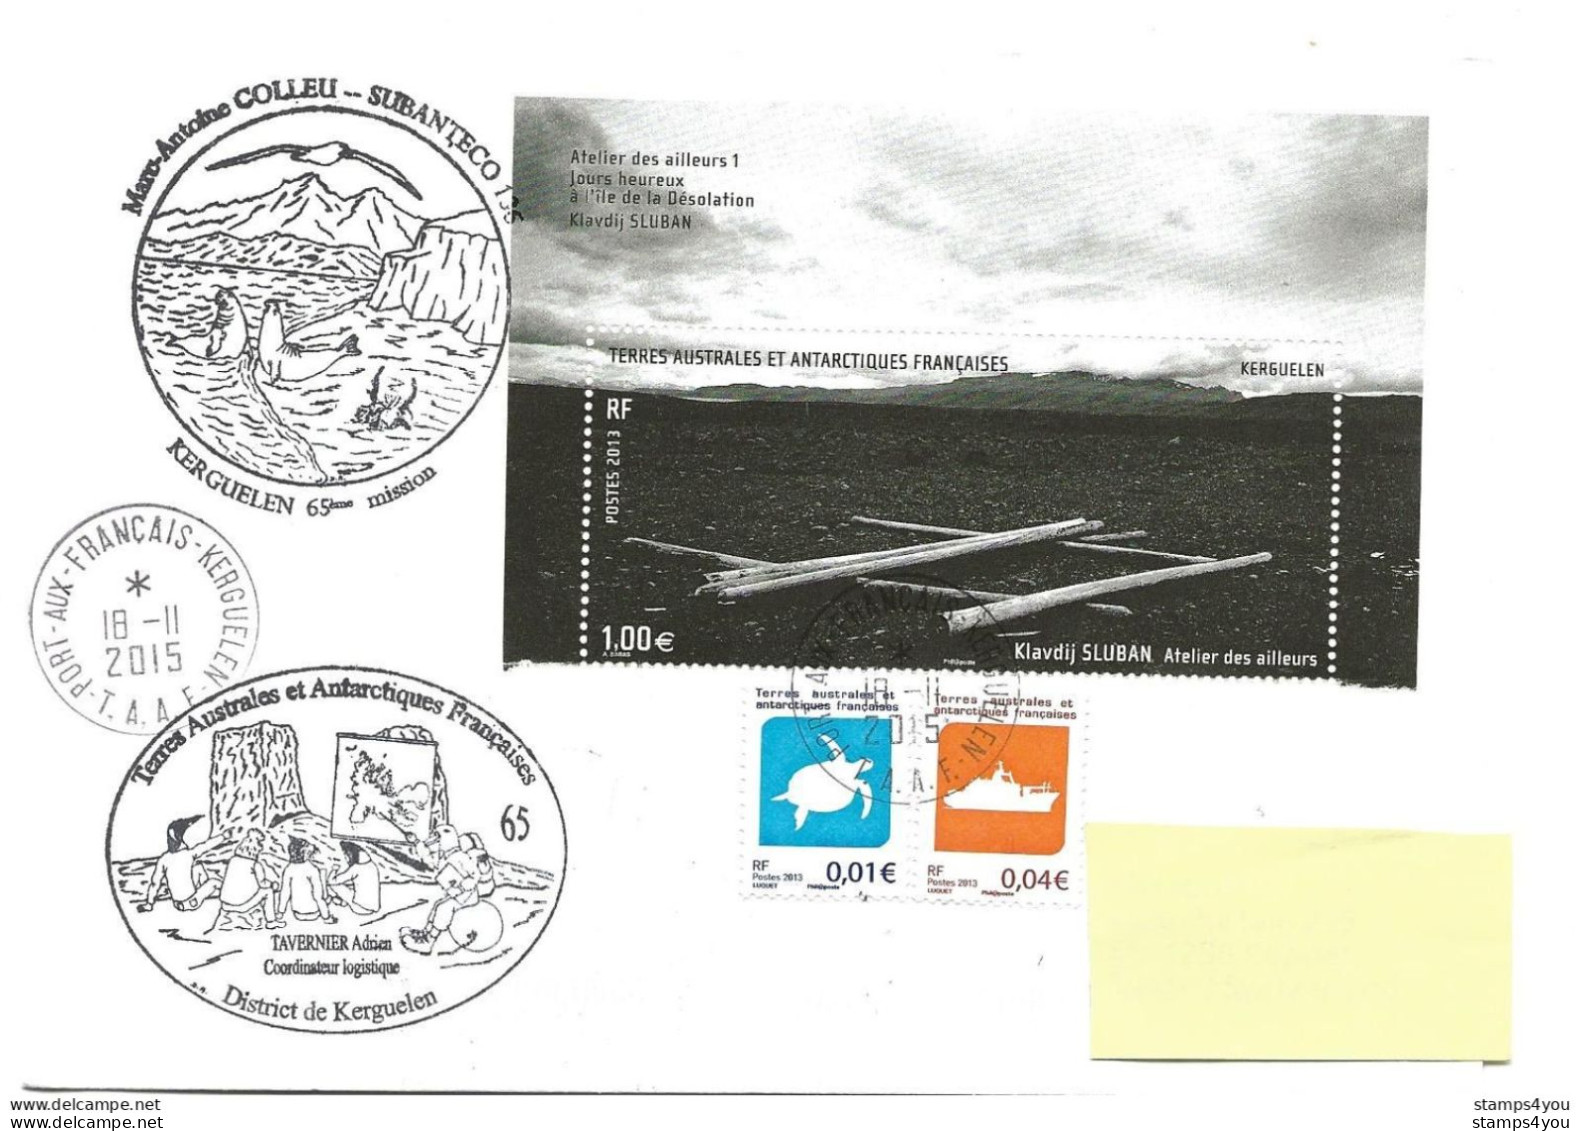 440 - 34 - Enveloppe TAAF Kerguelen - Cachets Illustrés Mission 65 - 2015 - Research Stations